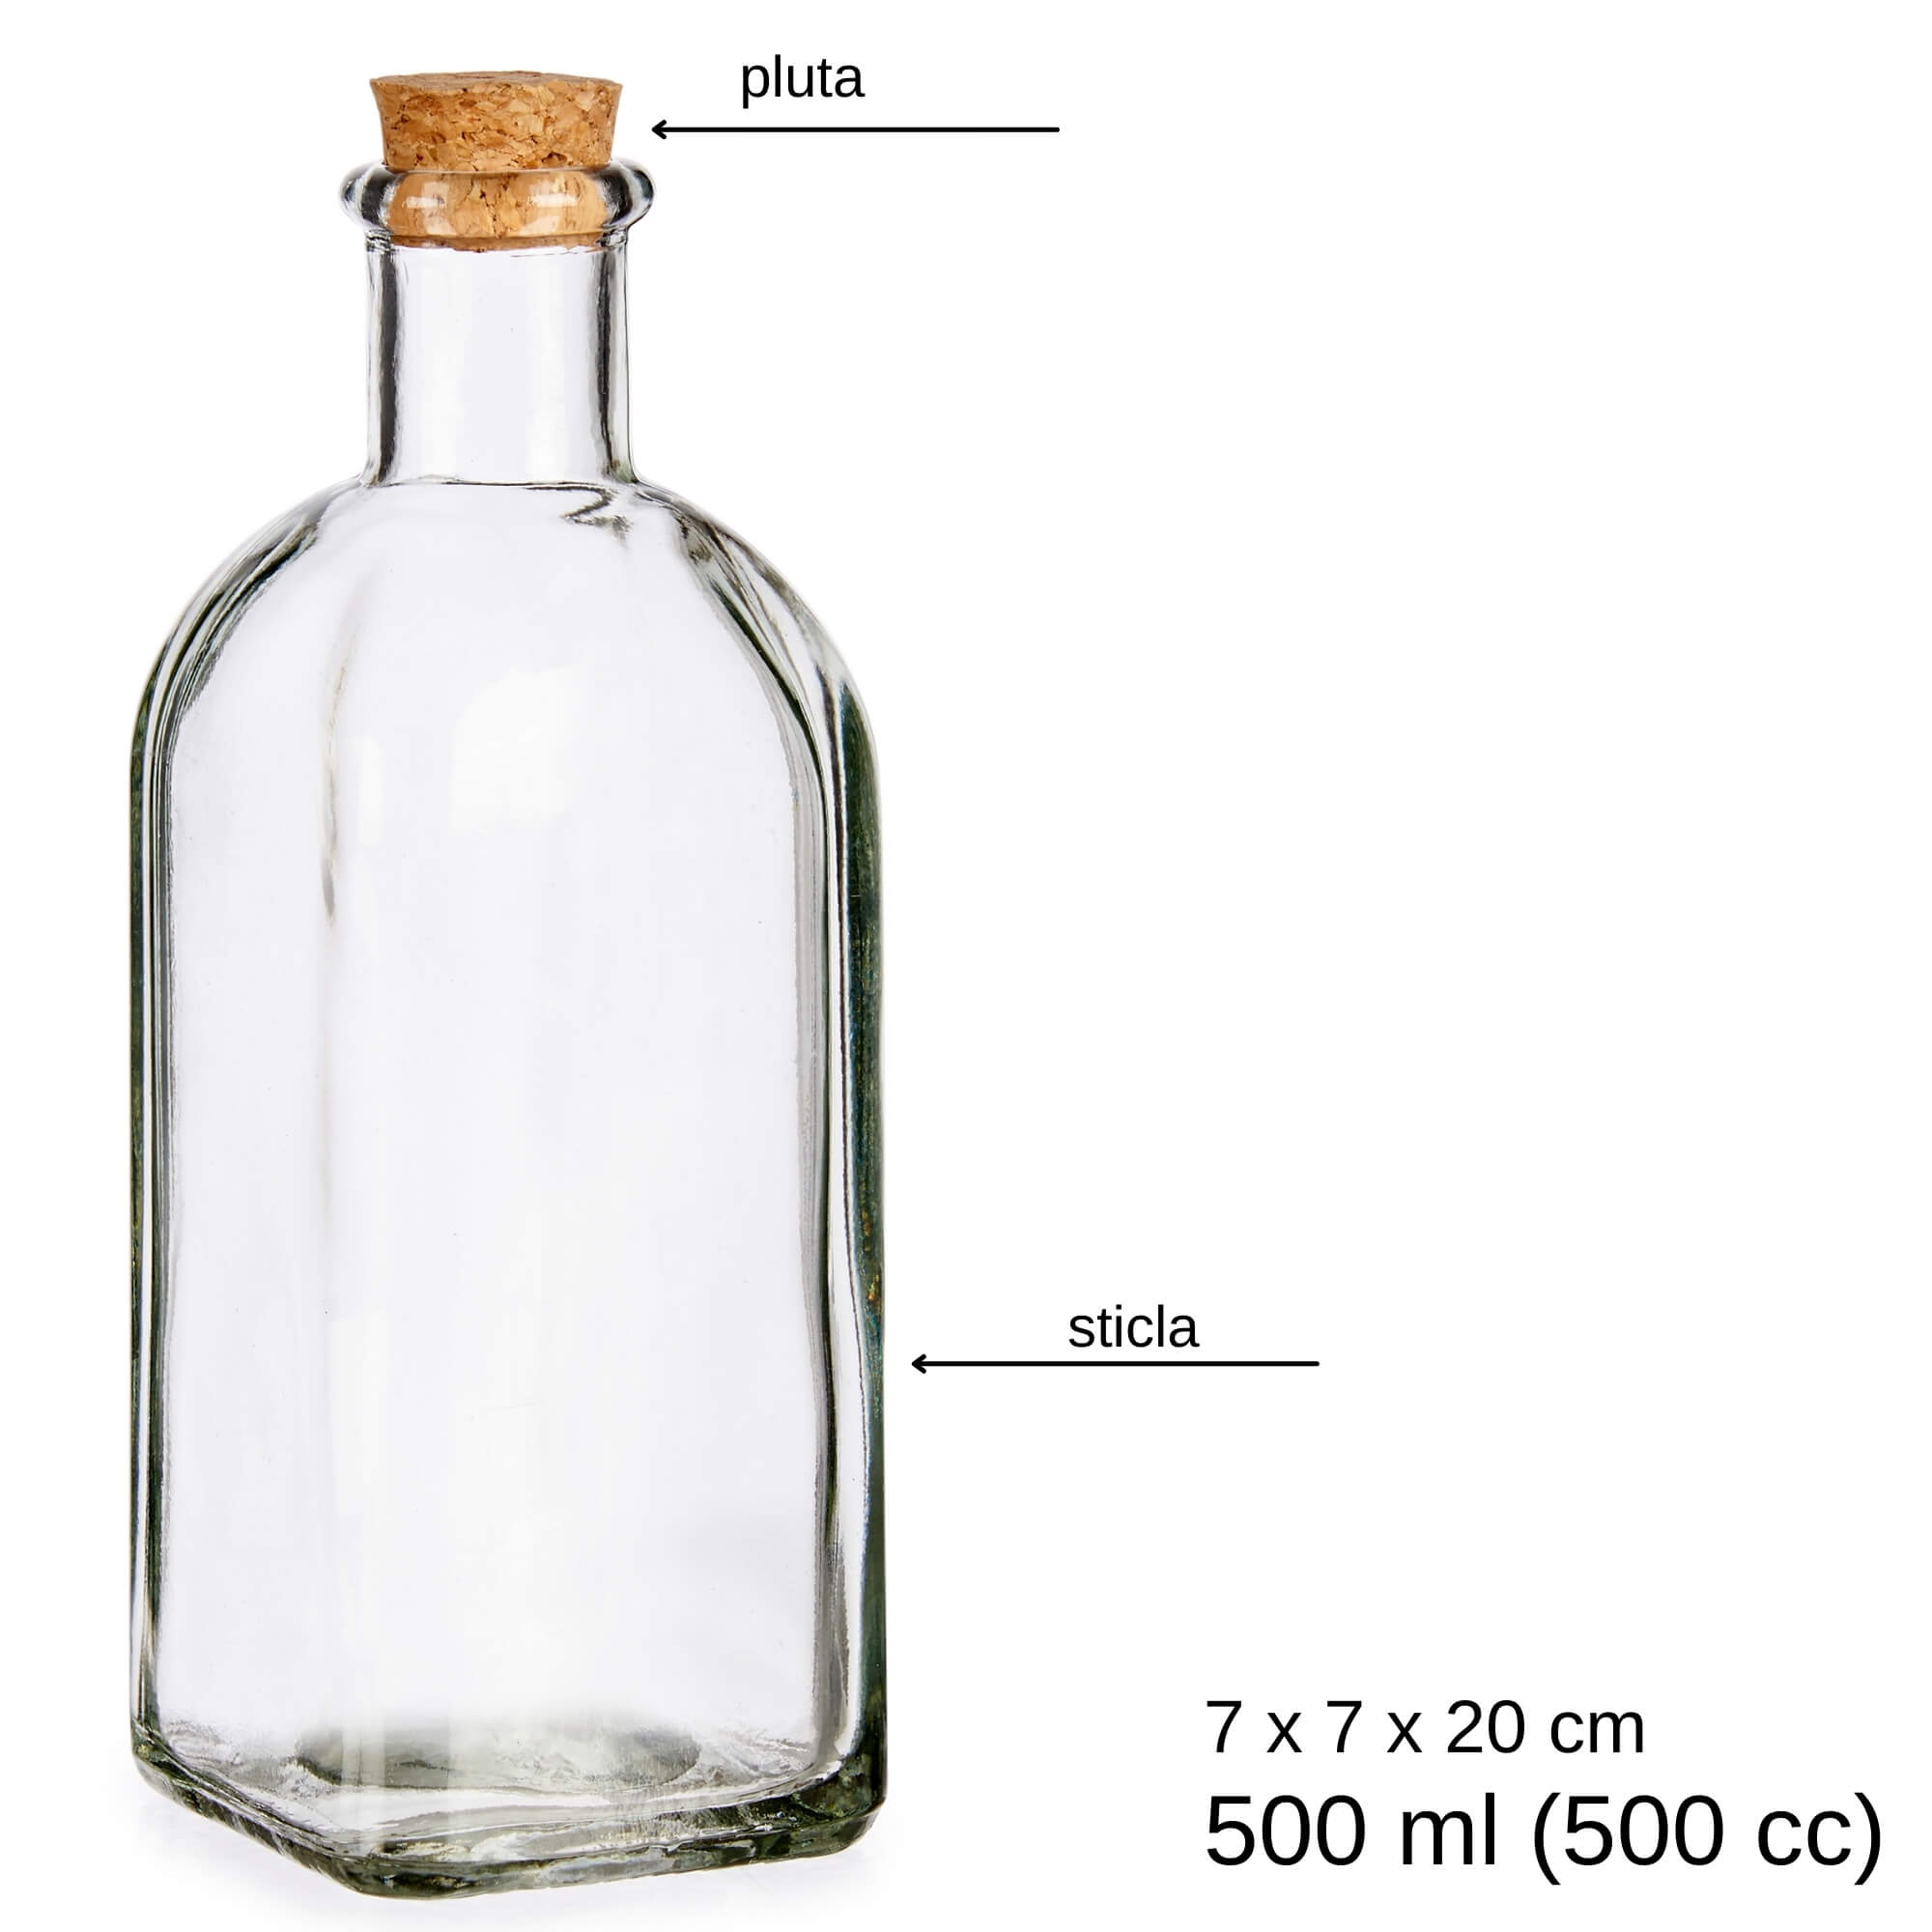 Poza Recipient sticla cu dop pluta pentru ulei, otet si alte lichide bucatarie 500 ml